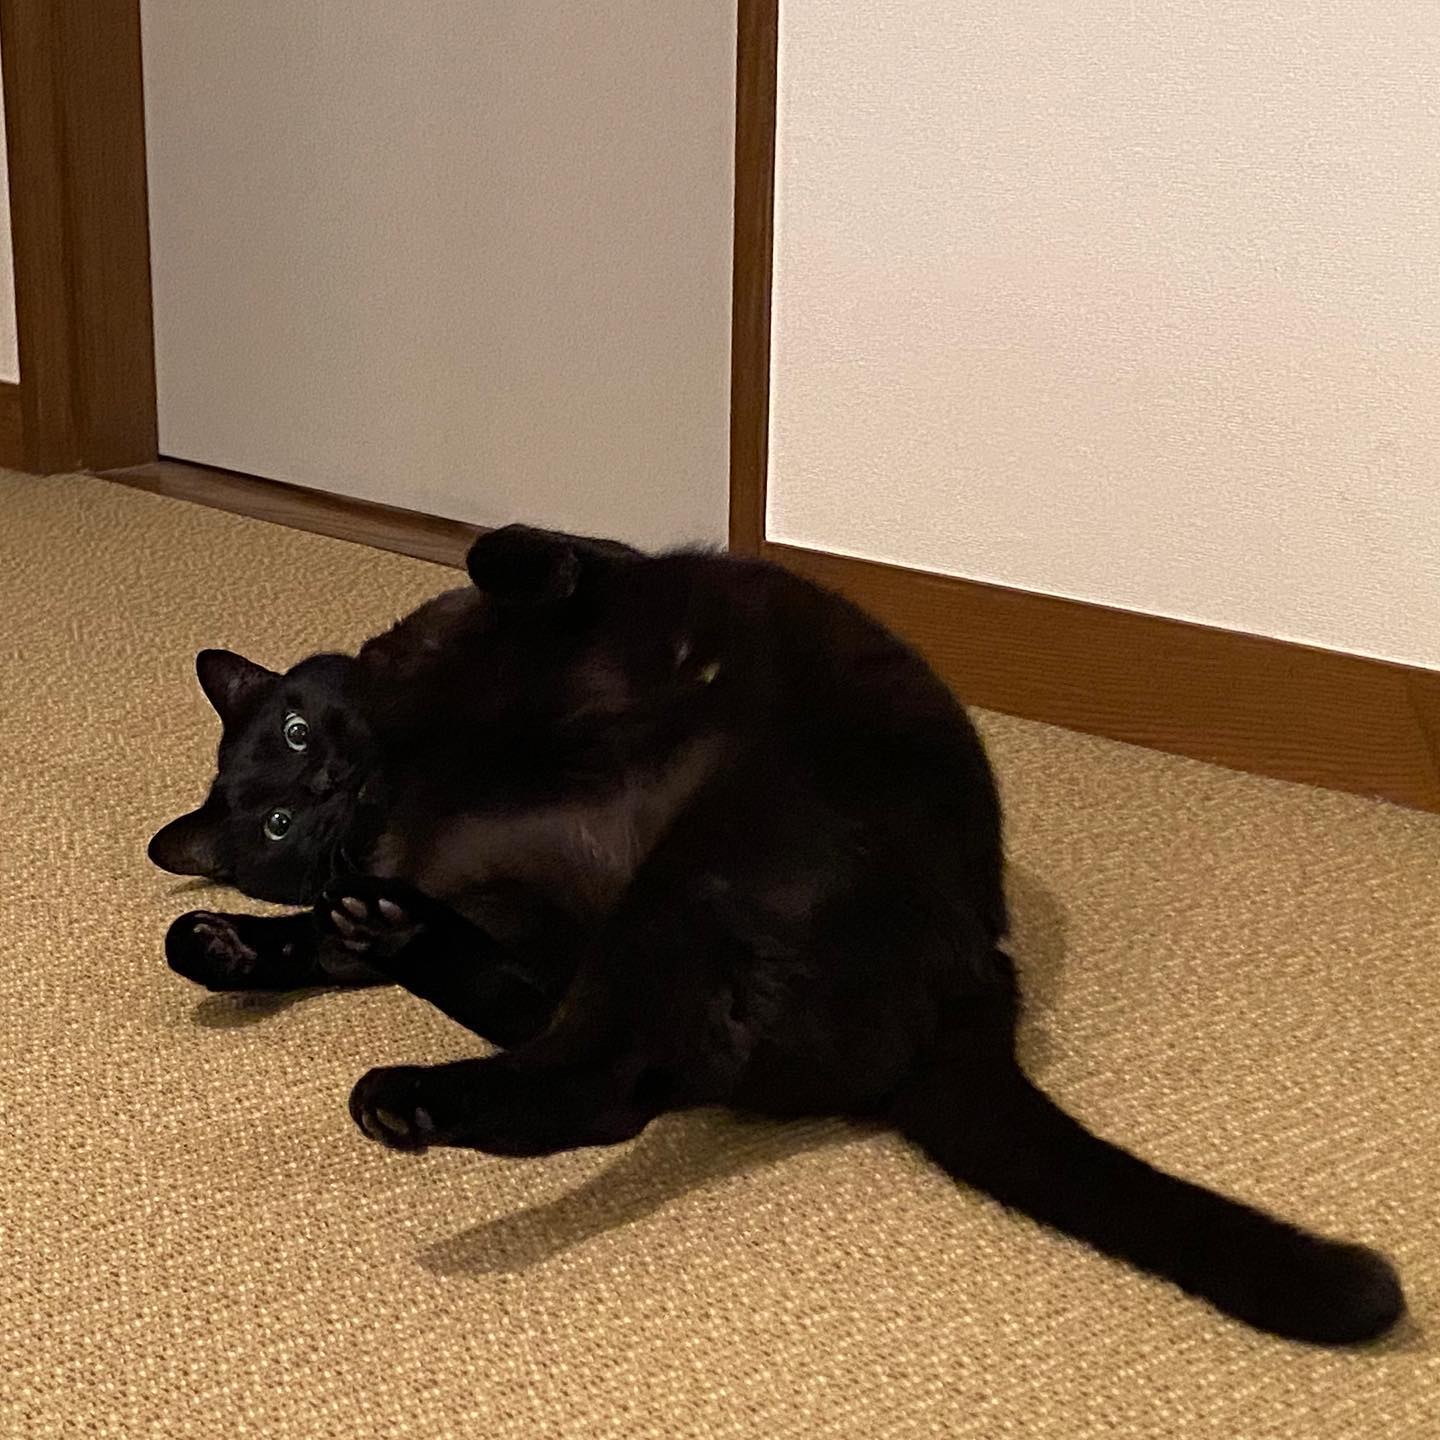 ナラちゃん、最近はお留守番だと不機嫌になることが多かったのですけど、久しぶりに上機嫌でゴロンゴロンでした️でも、決して撫でさせてはくれない#tokyopetsitter #cat #blackcat #猫 #黒猫